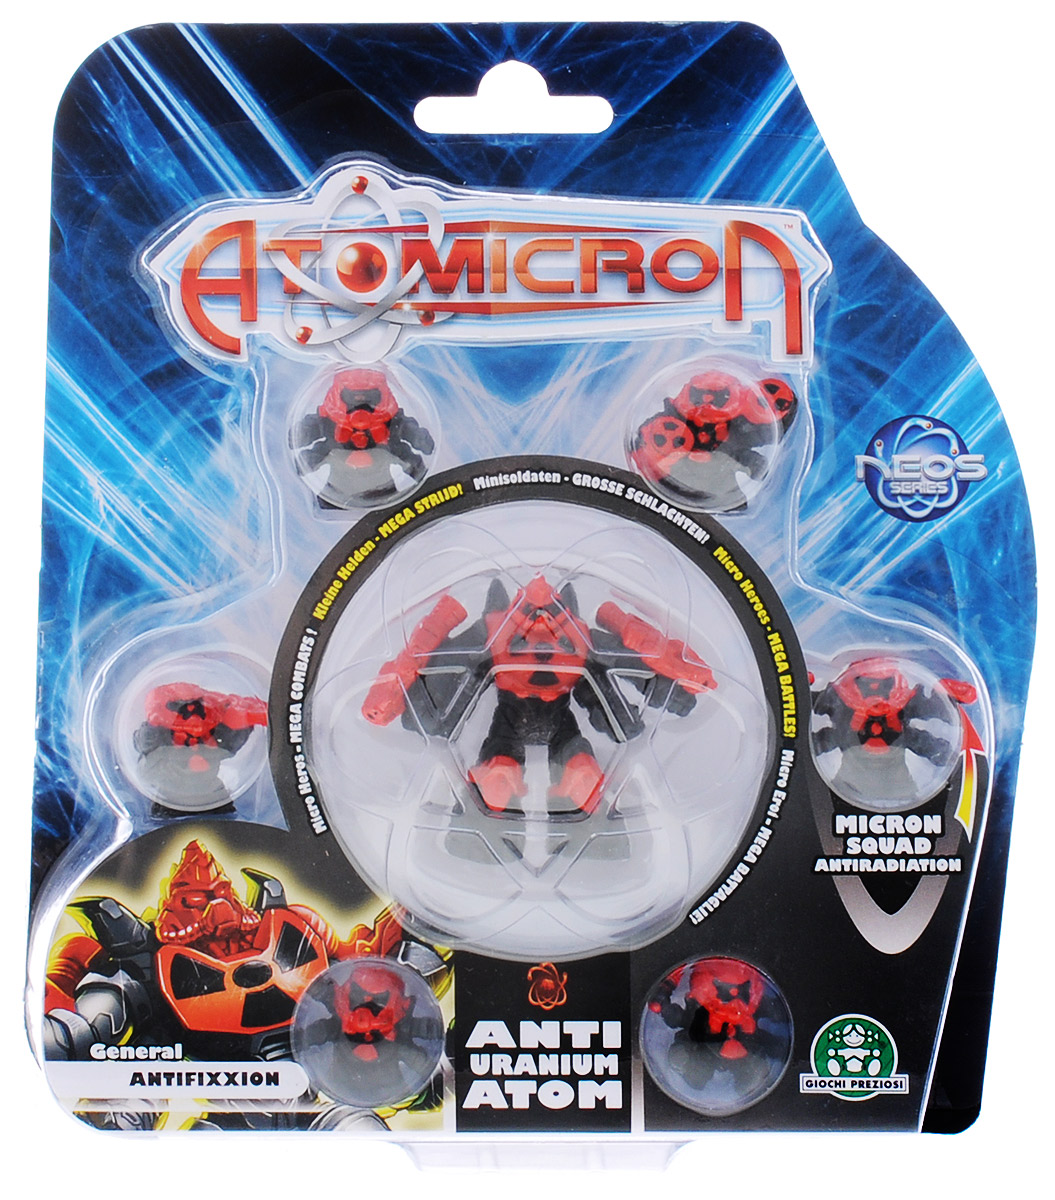 Набор фигурок Atomicron General Antifixxion 7 шт игровой набор atomicron космический корабль xenon atom красный